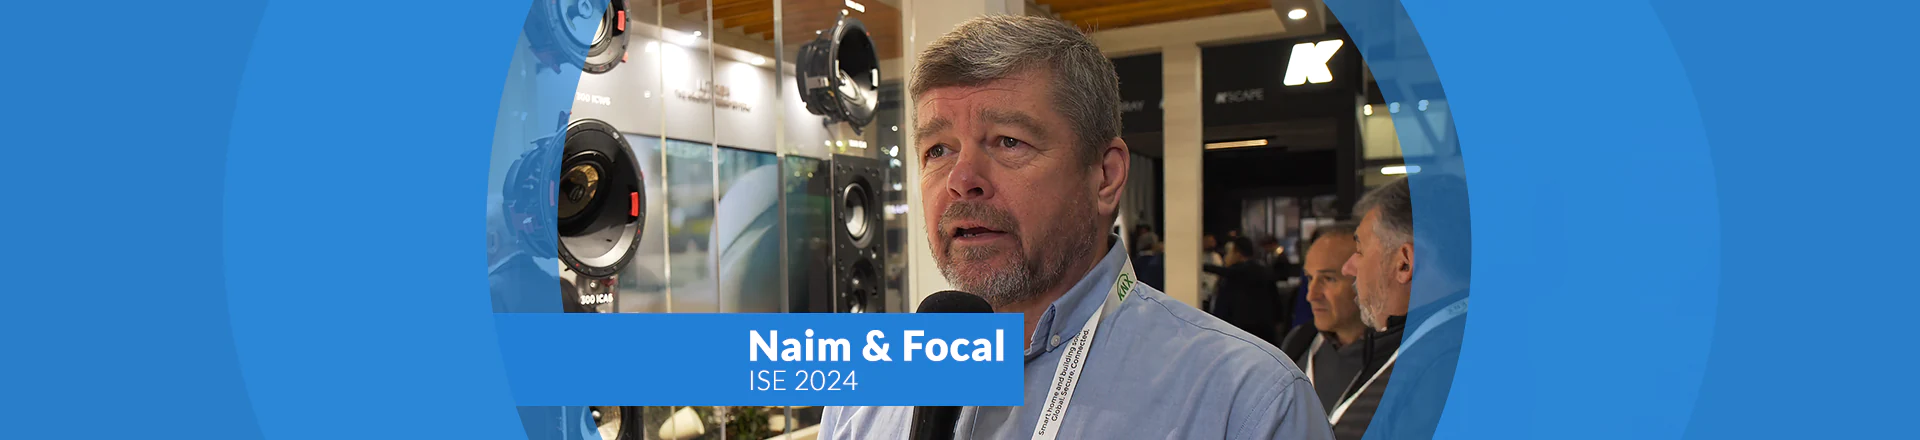 Naim i Focal tworzą ciekawe rozwiązania do instalacji audio - ISE'24